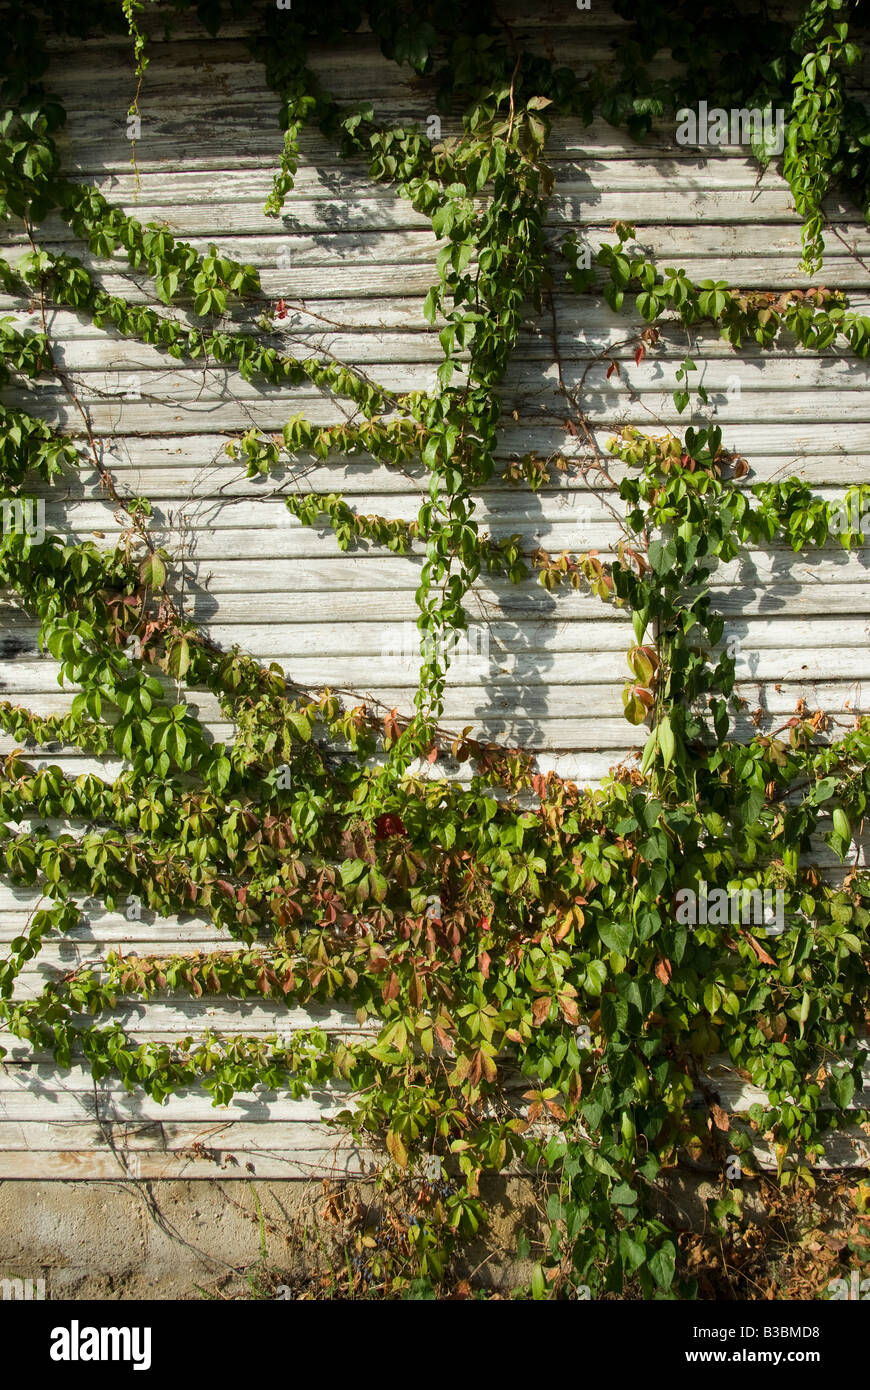 Vignes herbe croît dans un garage abandonné Banque D'Images